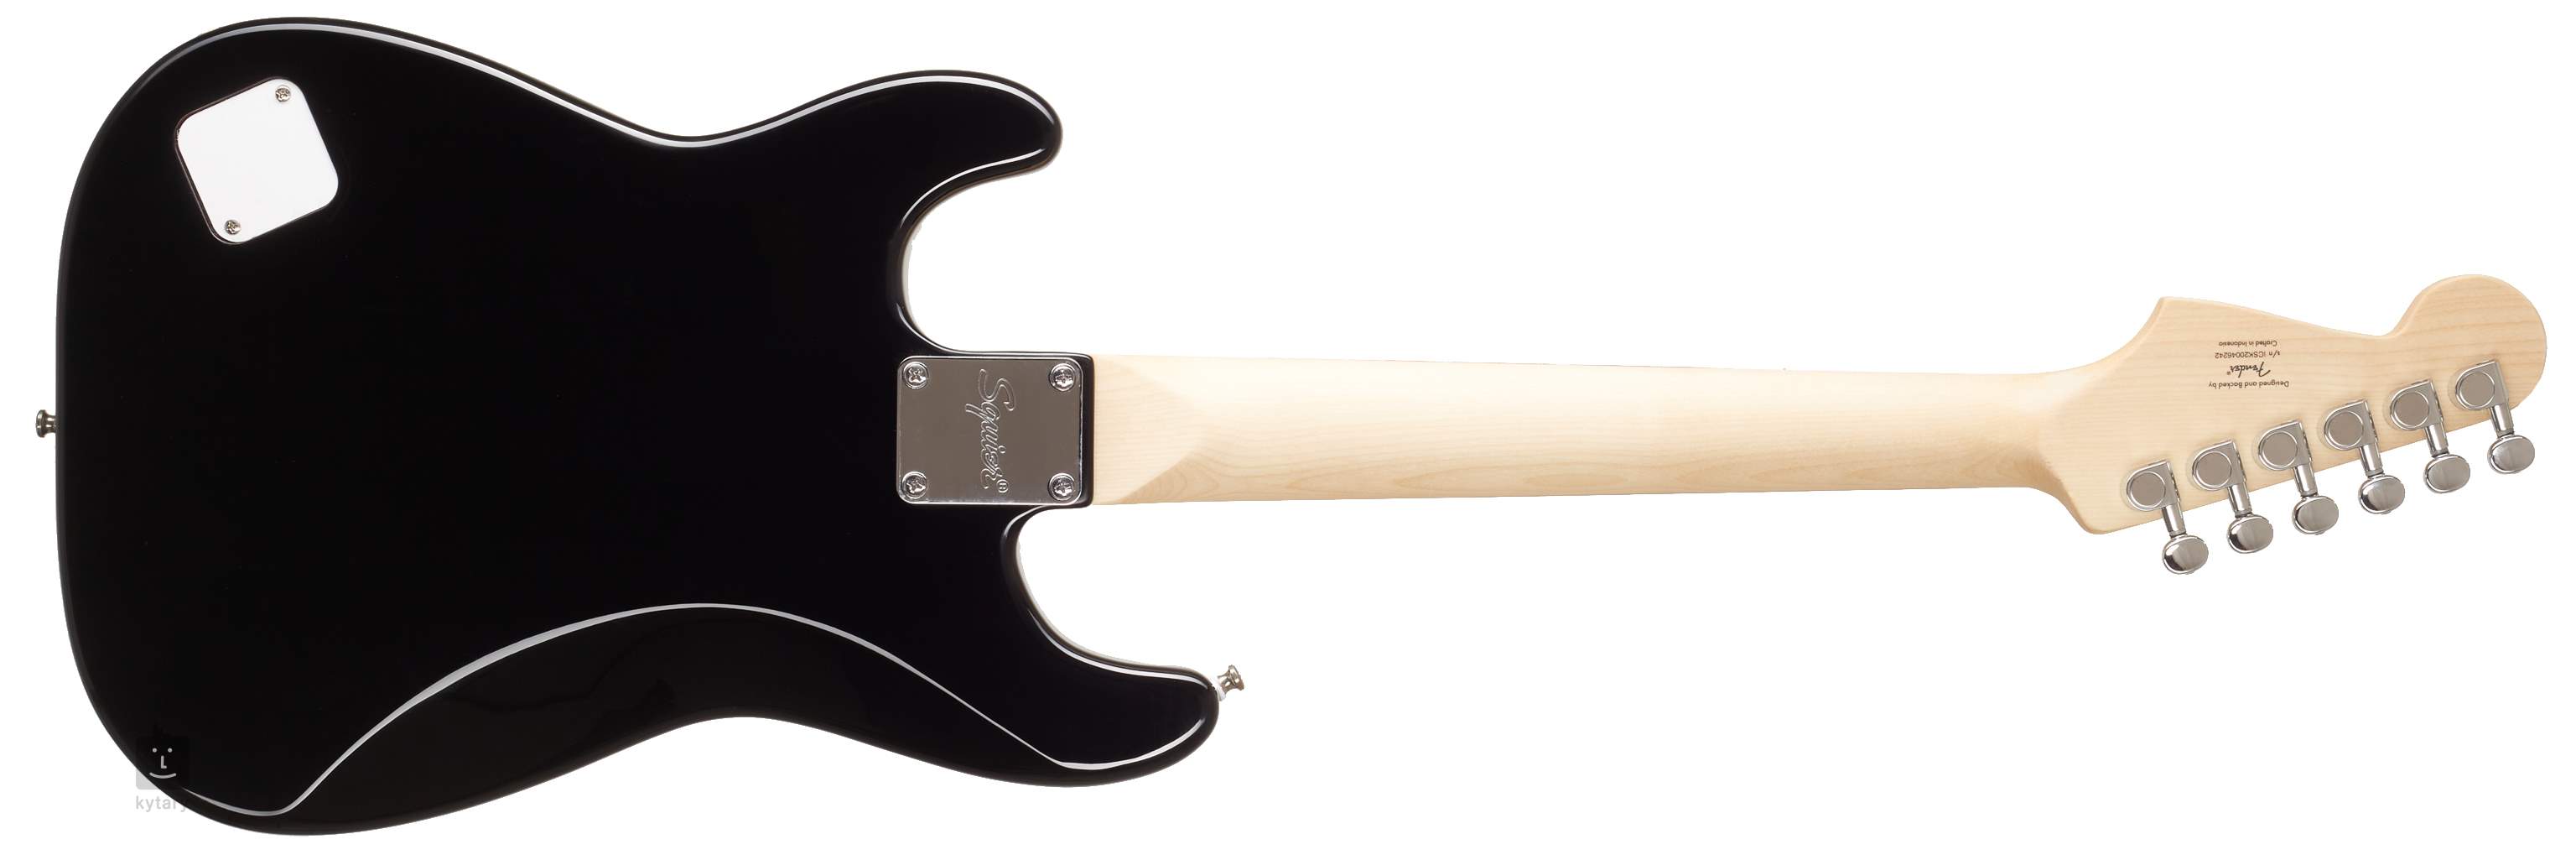 Fender Squier Mini Strat V2 Guitare électrique Gaucher Blac